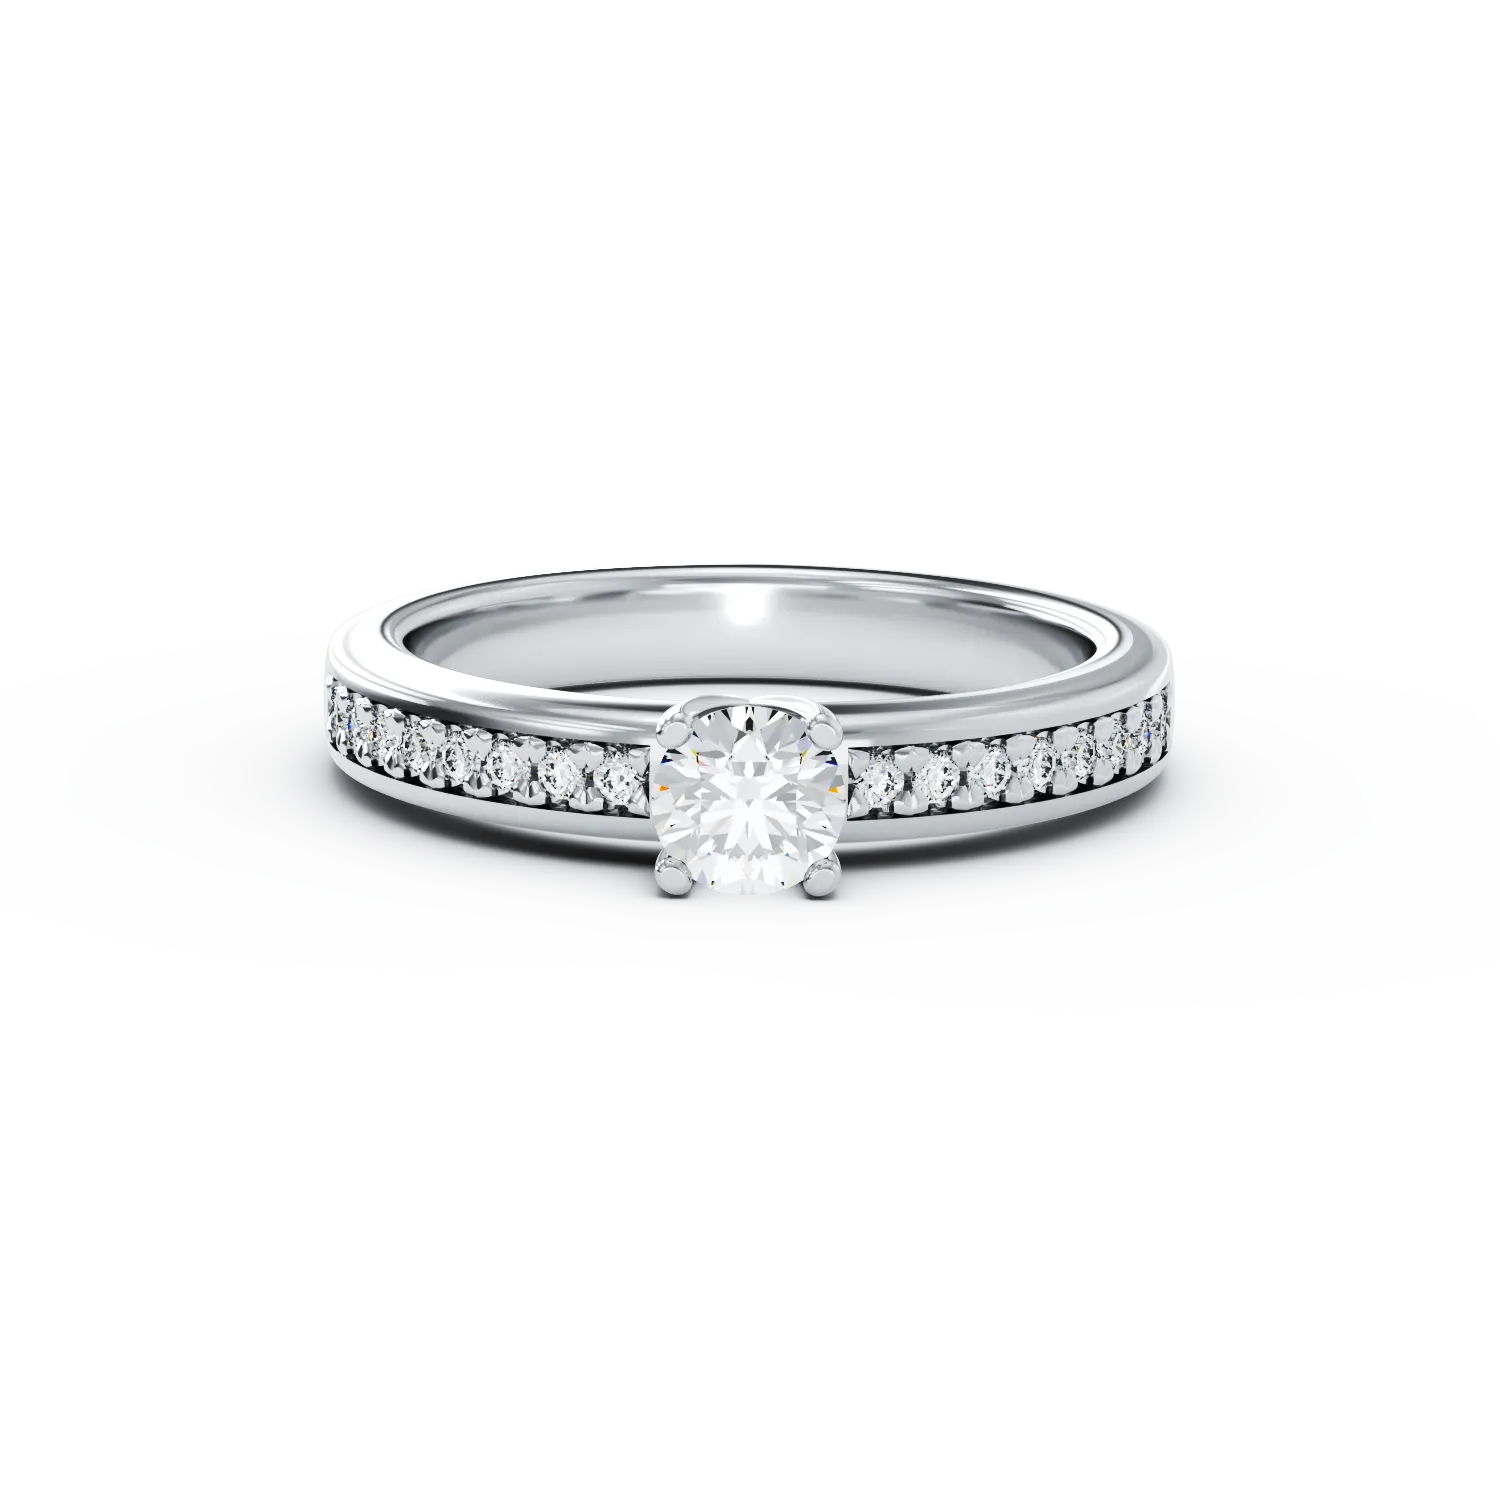 Eljegyzési gyűrű 18K-os fehér aranyból 0,3ct gyémánttal és 0,08ct gyémántokkal. Gramm: 3,9